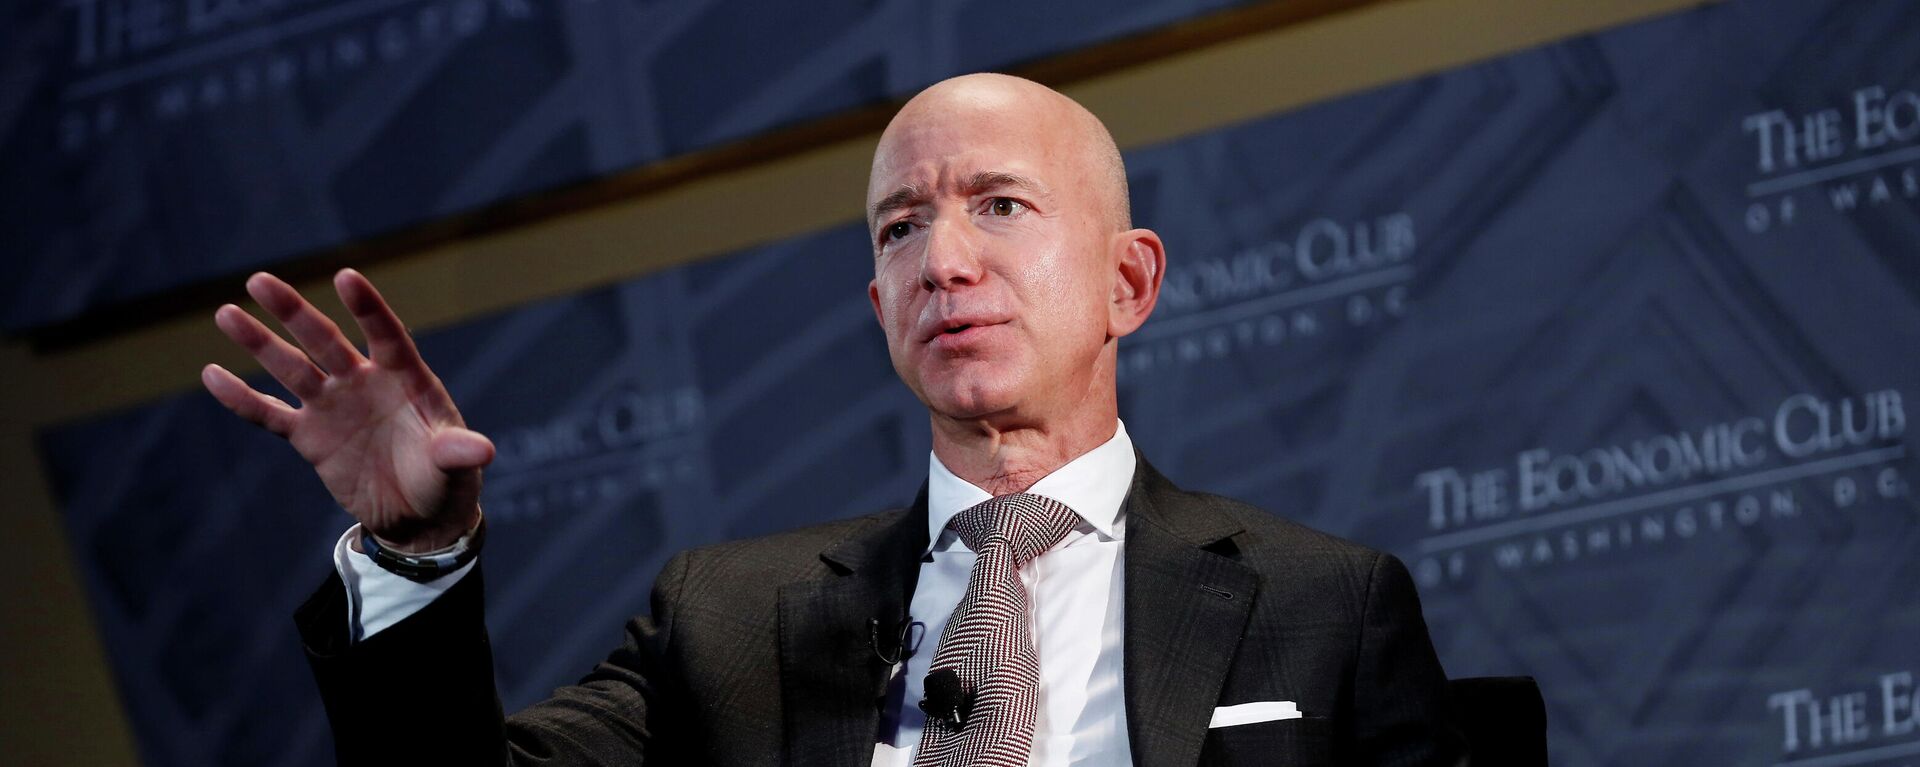 Jeff Bezos, fundador de Amazon - Sputnik Mundo, 1920, 06.04.2021